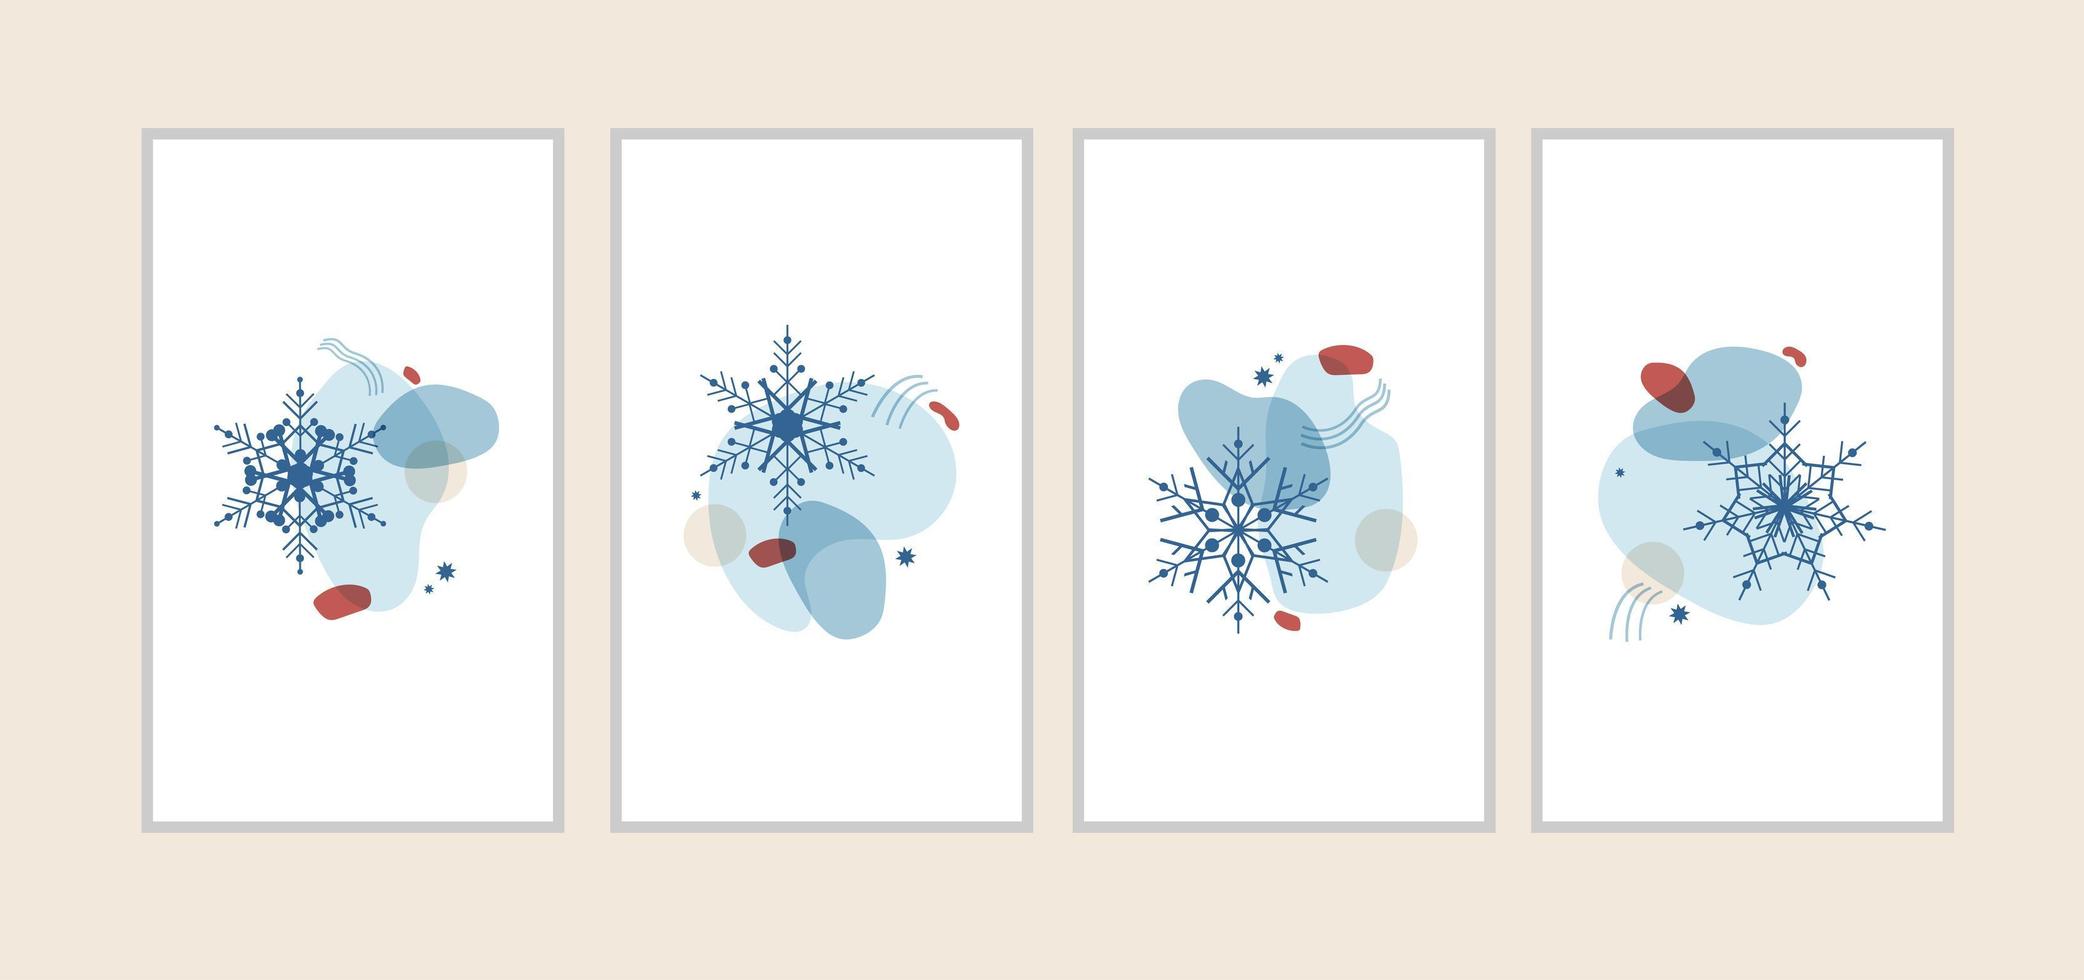 definir ilustração abstrata de inverno de formas e flocos de neve em azul com um vermelho. decoração vertical para cartões, cartazes, convites, banners, redes sociais de natal e ano novo. vetor isolado